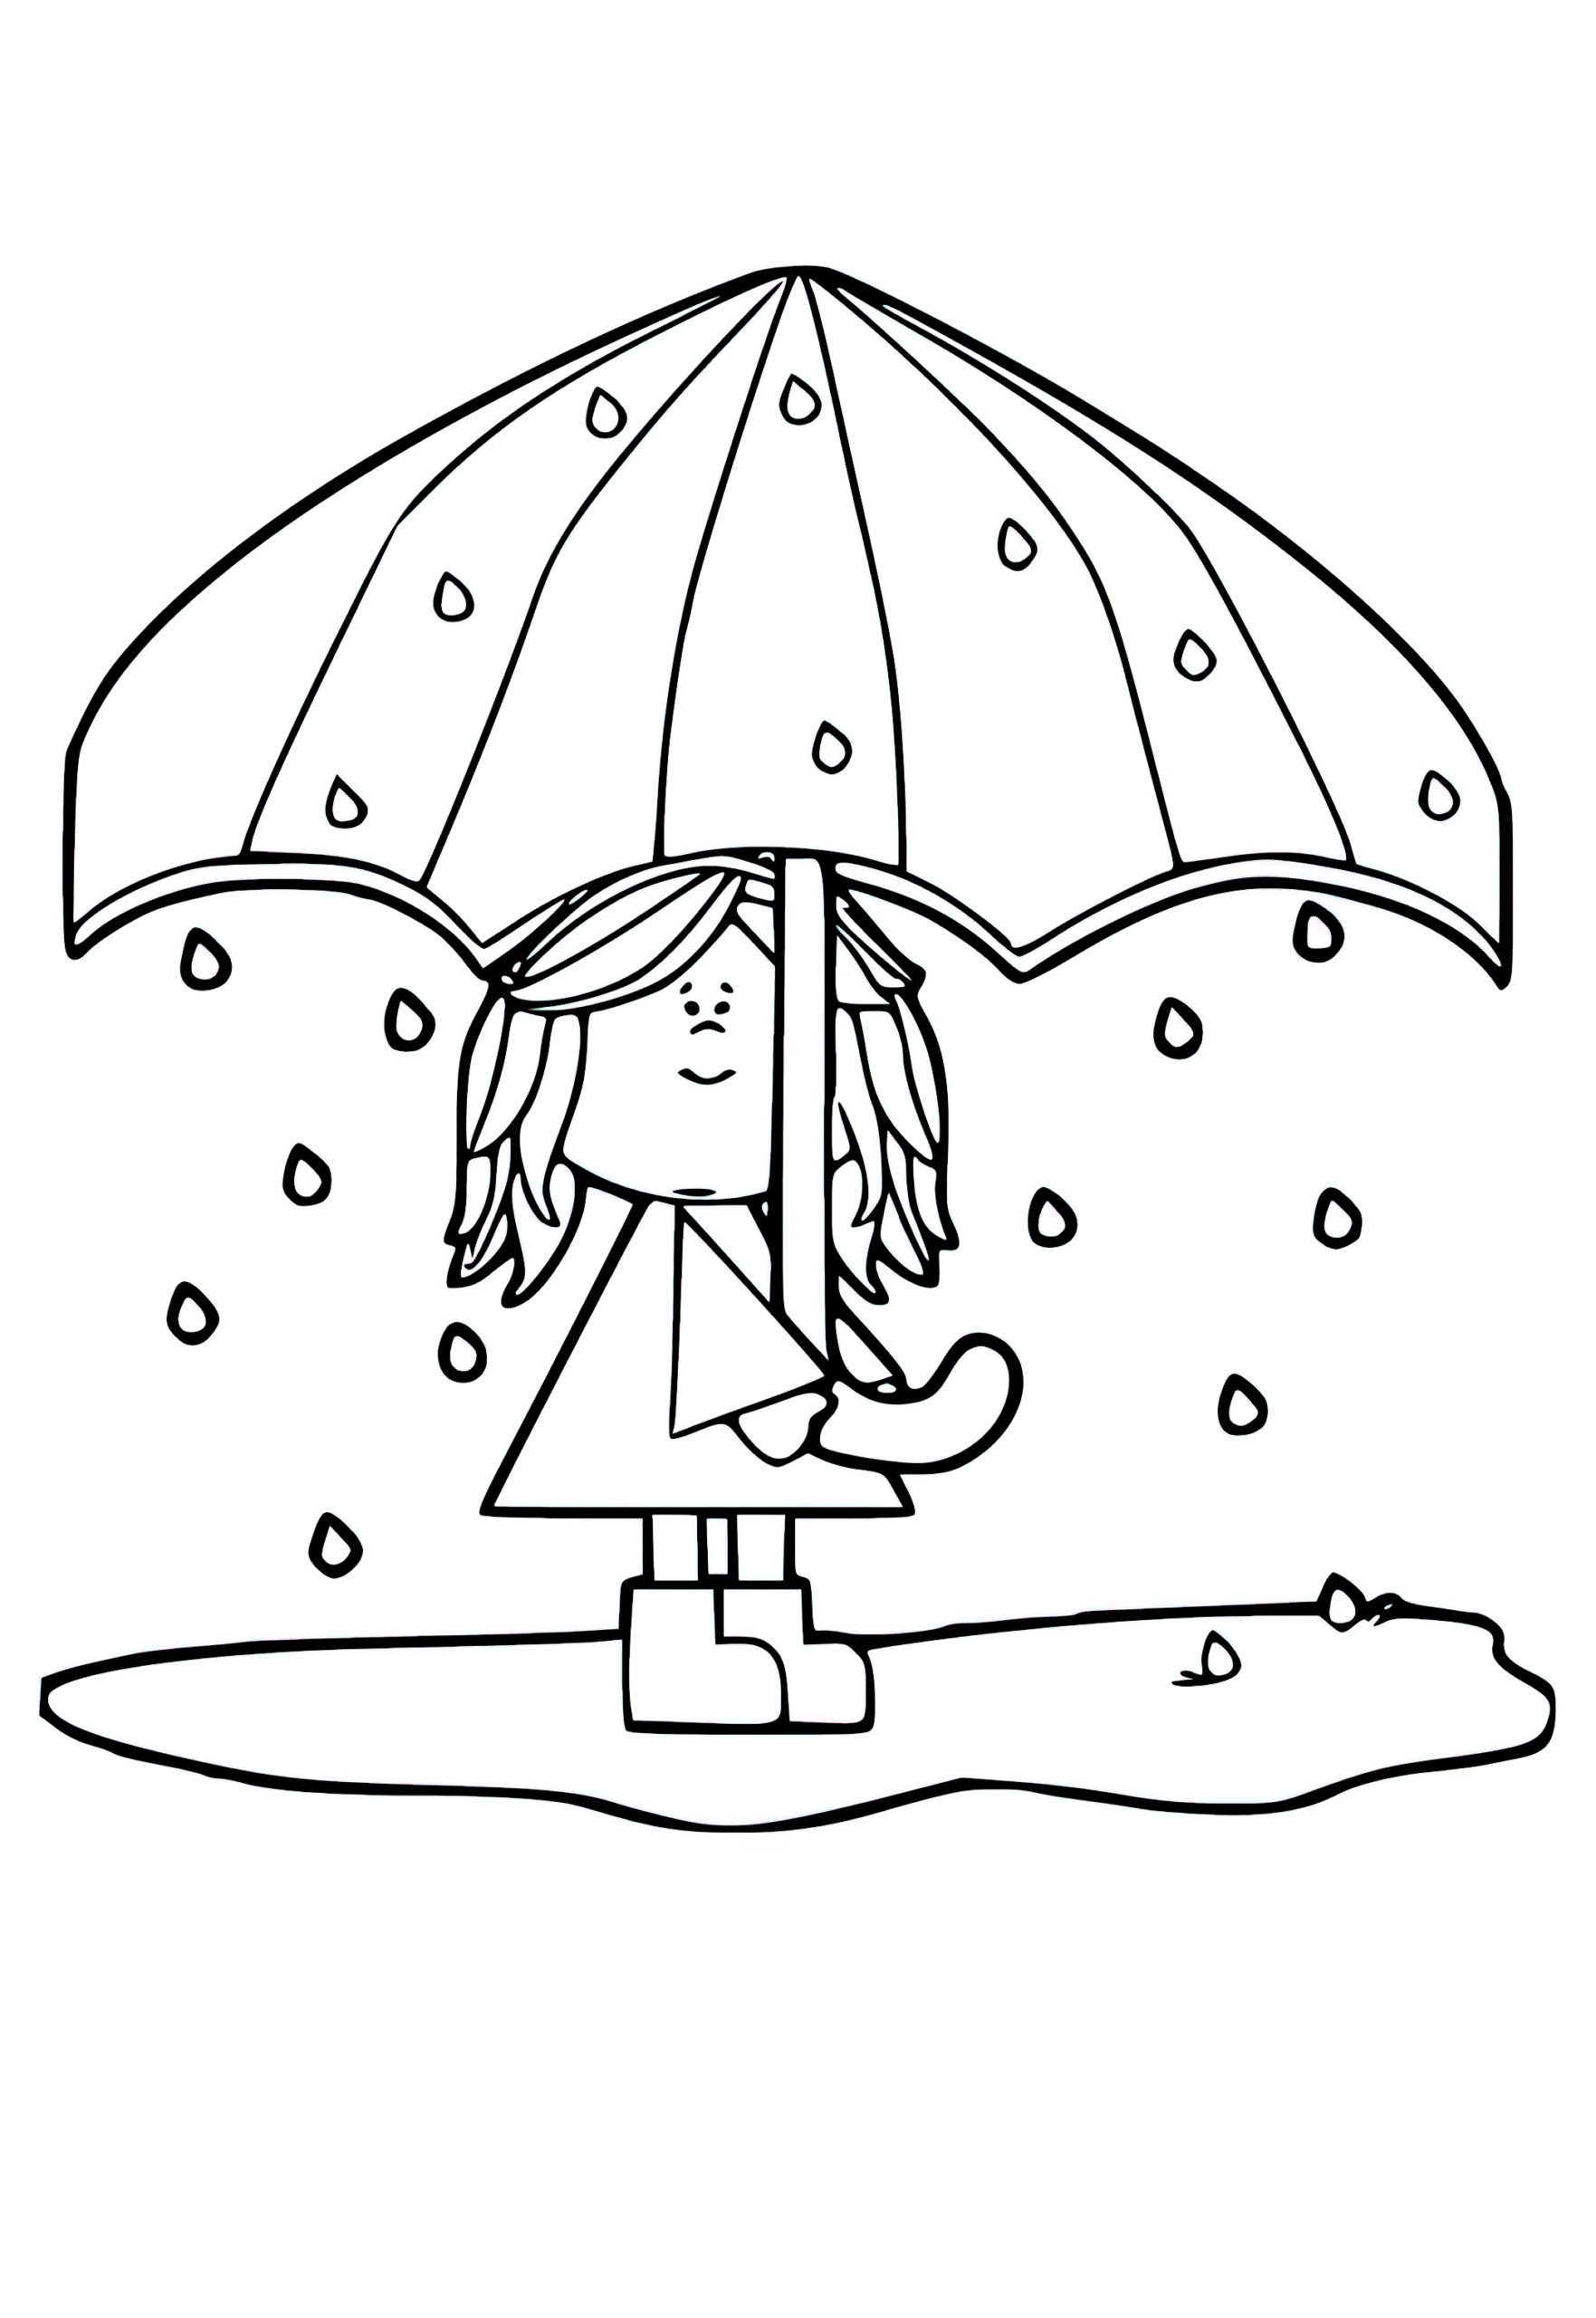 דף צביעה ילדה בשלולית תחת מטריה